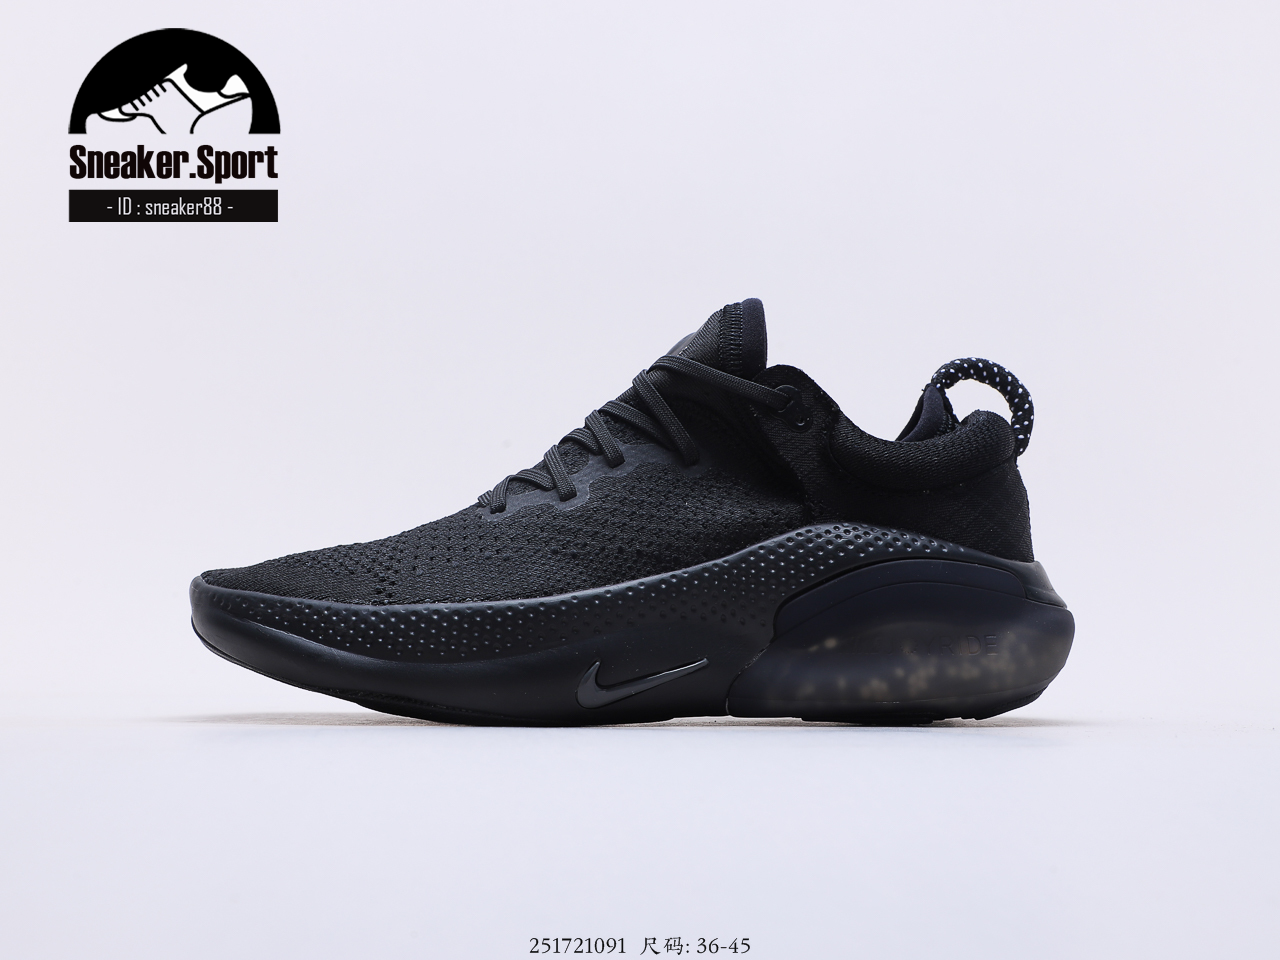 [Sneaker.Sport] รองเท้าวิ่งNiikee Joyride Run FK BLACK 36-45 [เผื่อ1ไซส์] รองเท้ากีฬา รองเท้าออกกำลังกาย รองเท้าชาย-หญิง สินค้าตรงปก100%